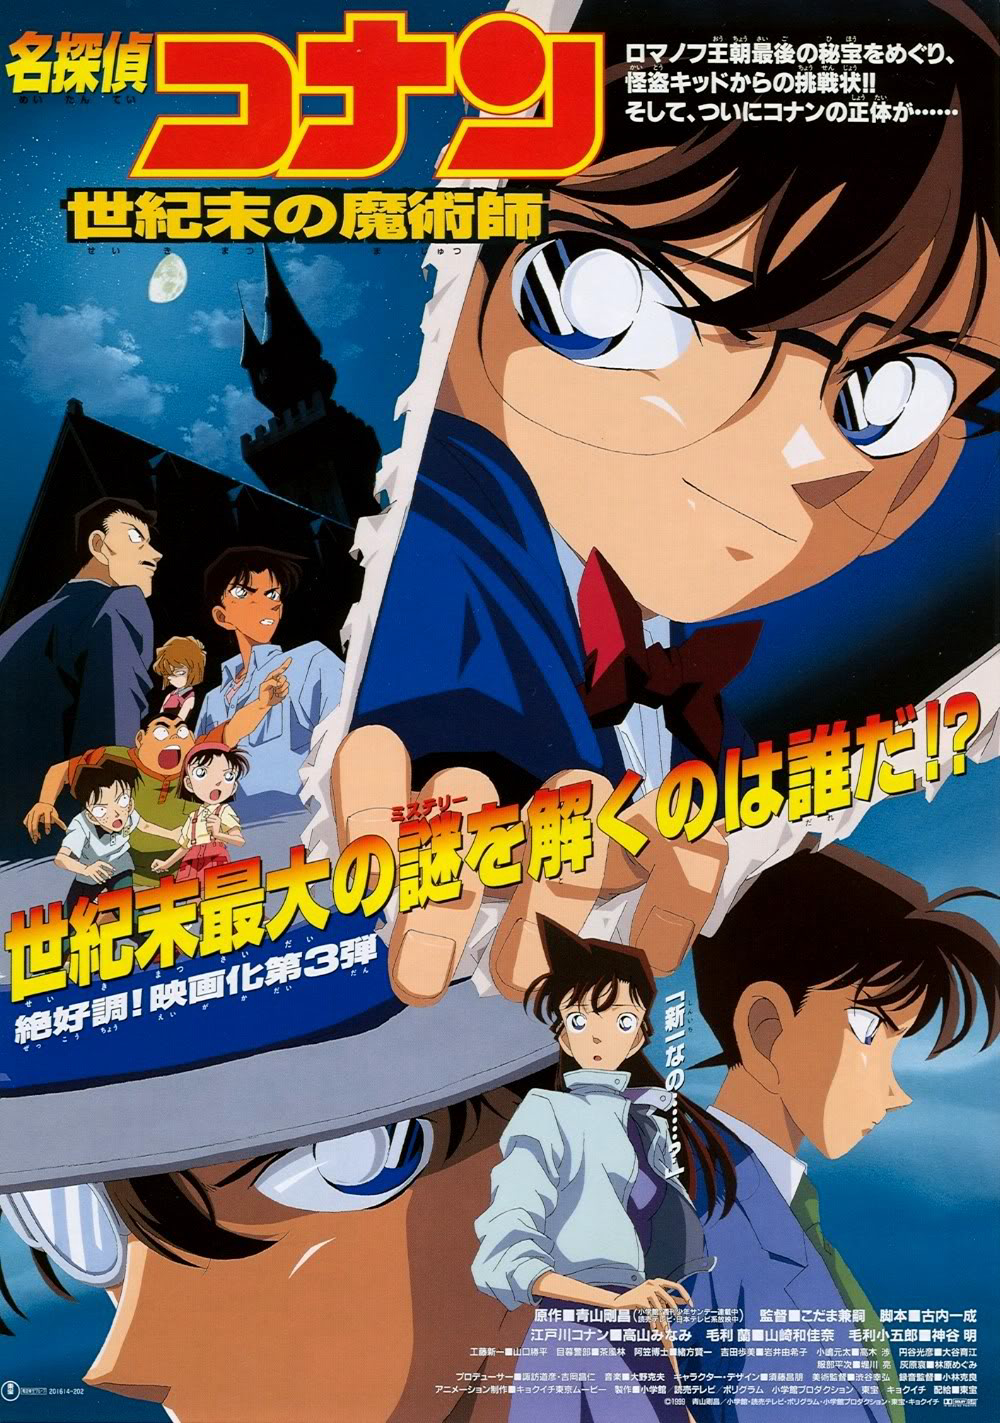 Poster Phim Thám Tử Lừng Danh Conan : Ảo Thuật Gia Cuối Cùng Của Thế Kỷ (Detective Conan: The Last Wizard of the Century)